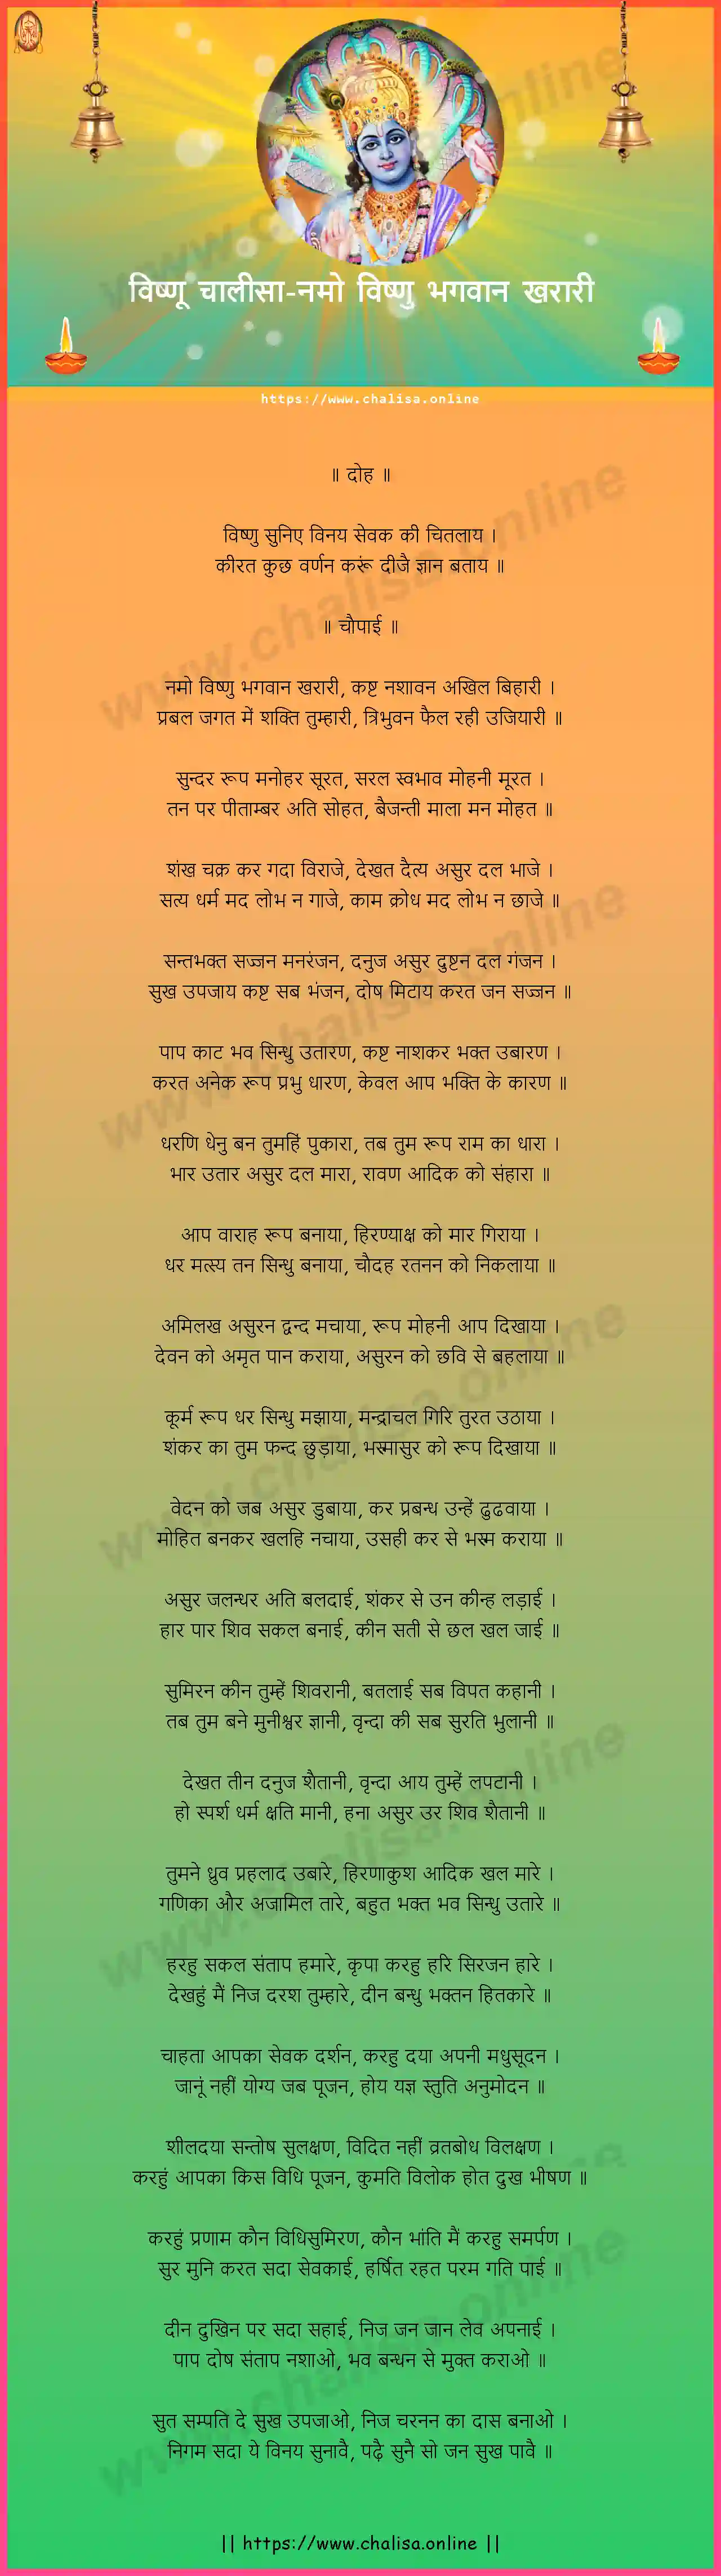 namo-vishnu-bhagwan-vishnu-chalisa-hindi-lyrics-download